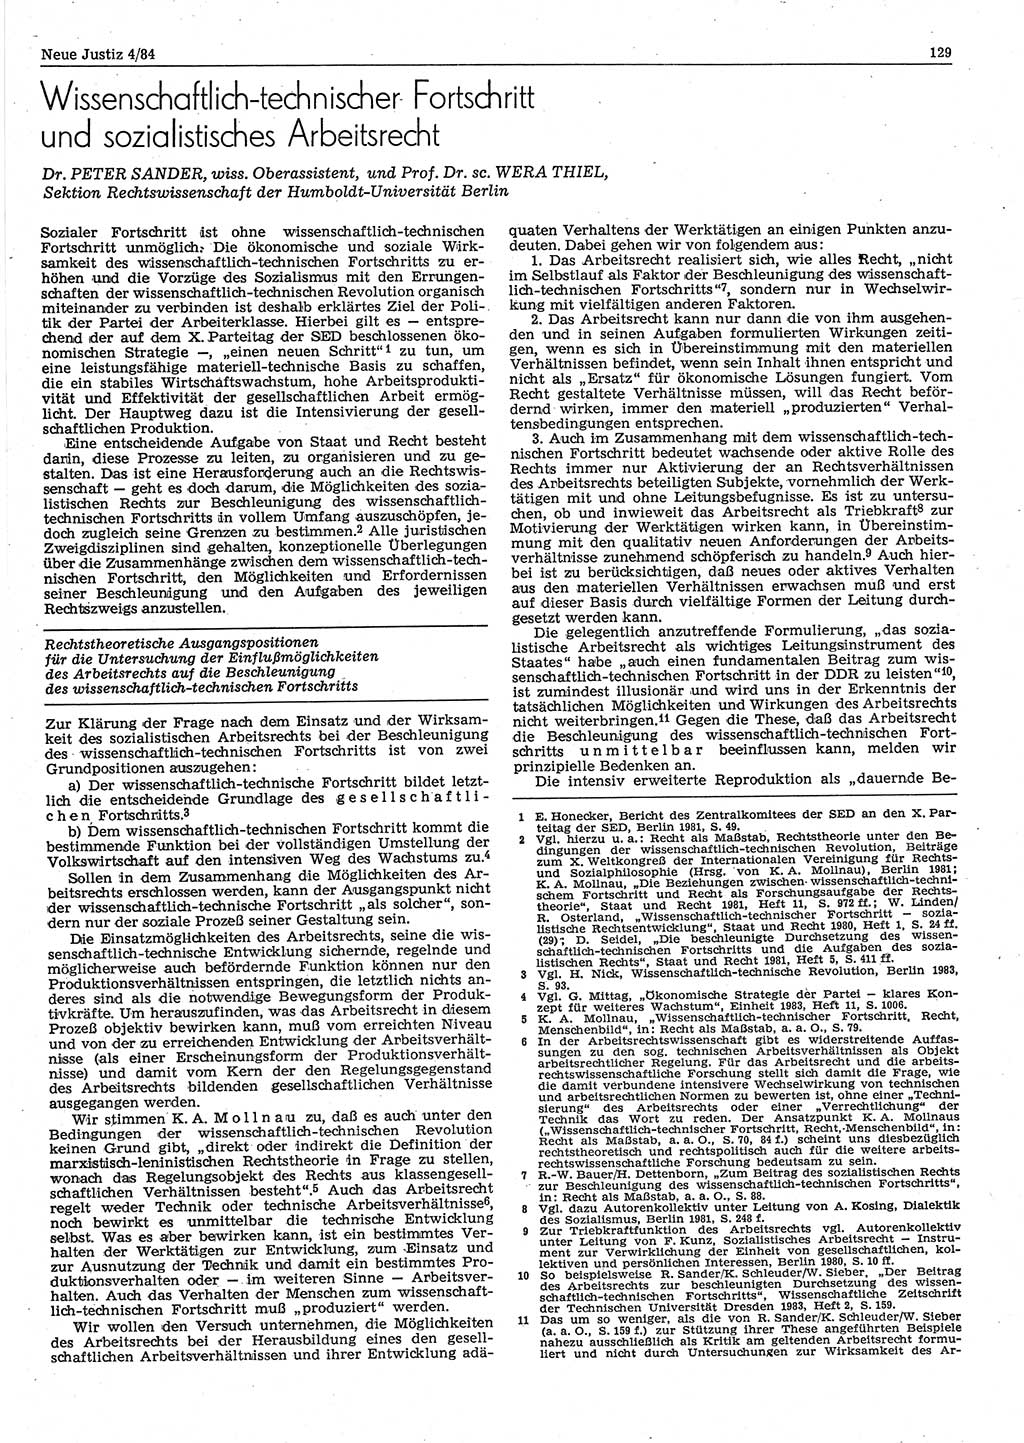 Neue Justiz (NJ), Zeitschrift für sozialistisches Recht und Gesetzlichkeit [Deutsche Demokratische Republik (DDR)], 38. Jahrgang 1984, Seite 129 (NJ DDR 1984, S. 129)